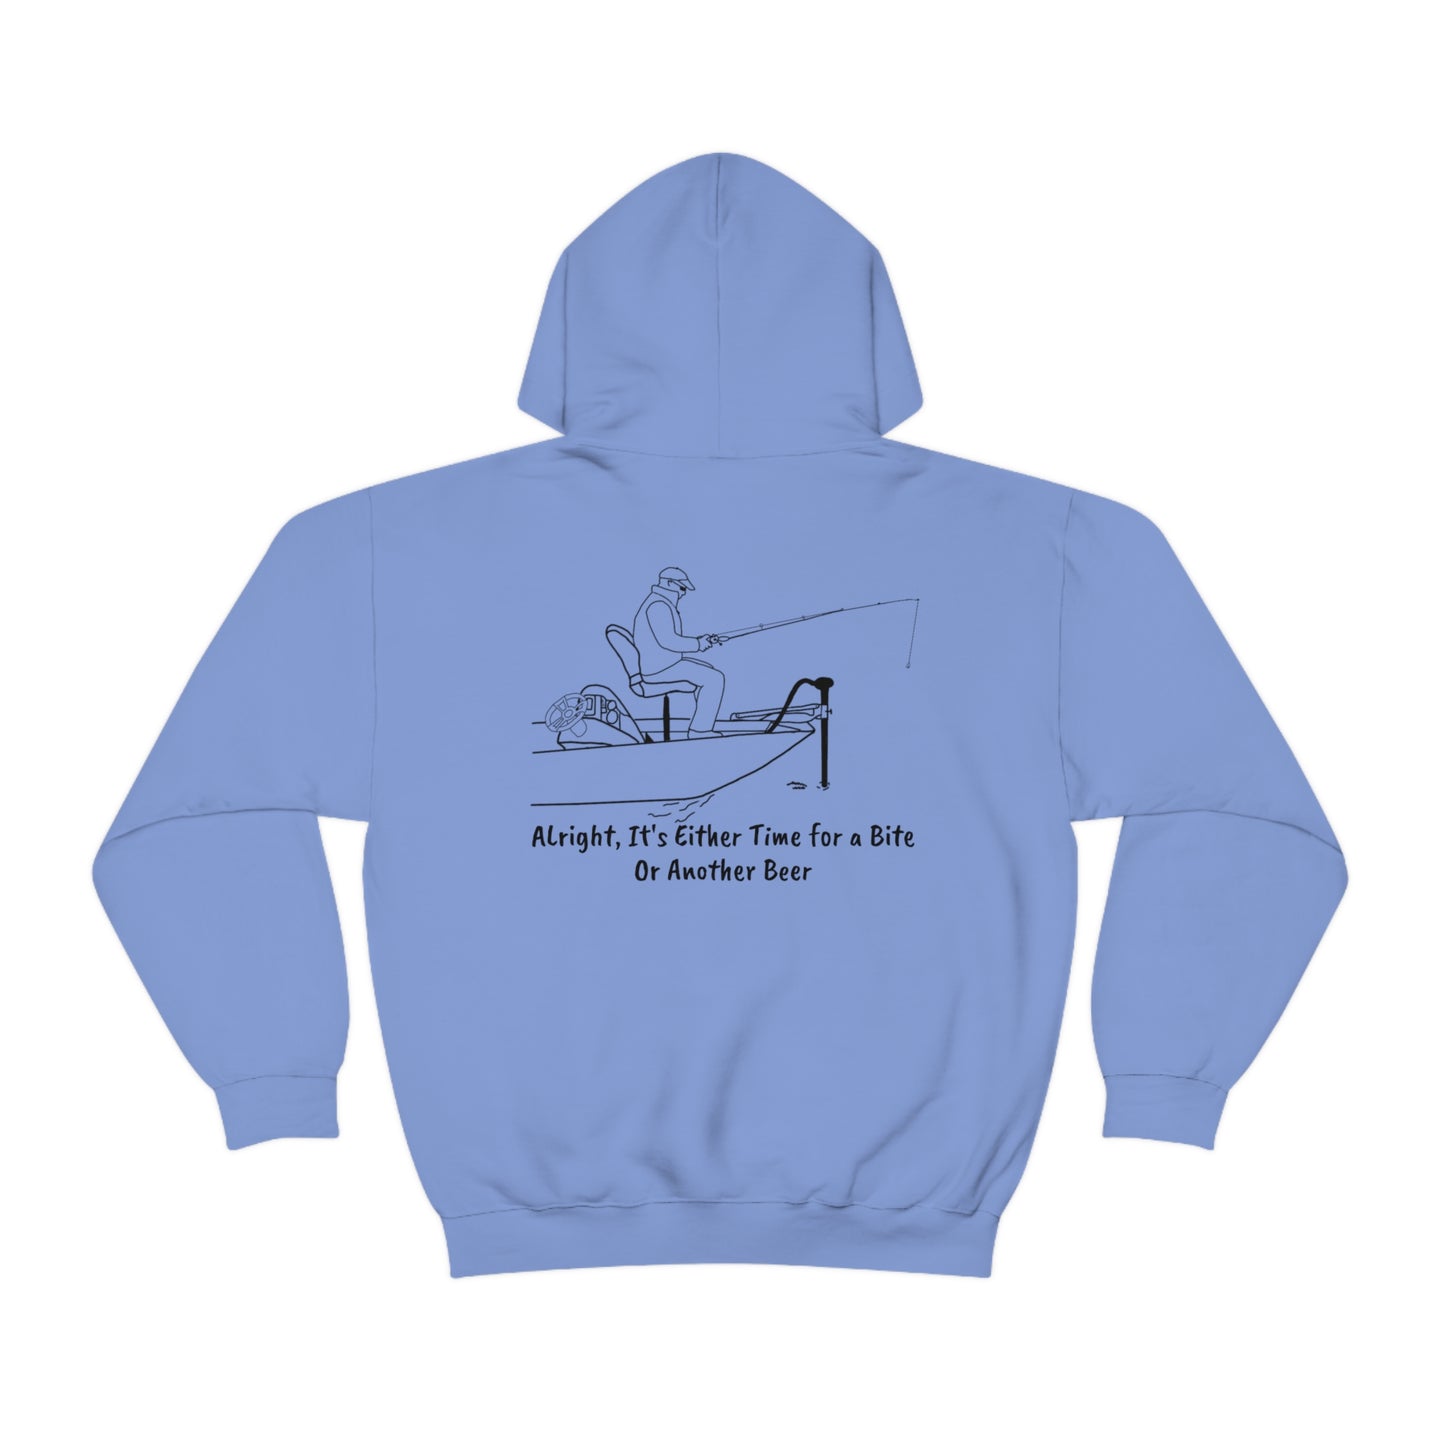 Trolling Motor Fishing, Bite or Beer - Okauchee Lake Unisex Heavy Blend Hooded Sweatshirt